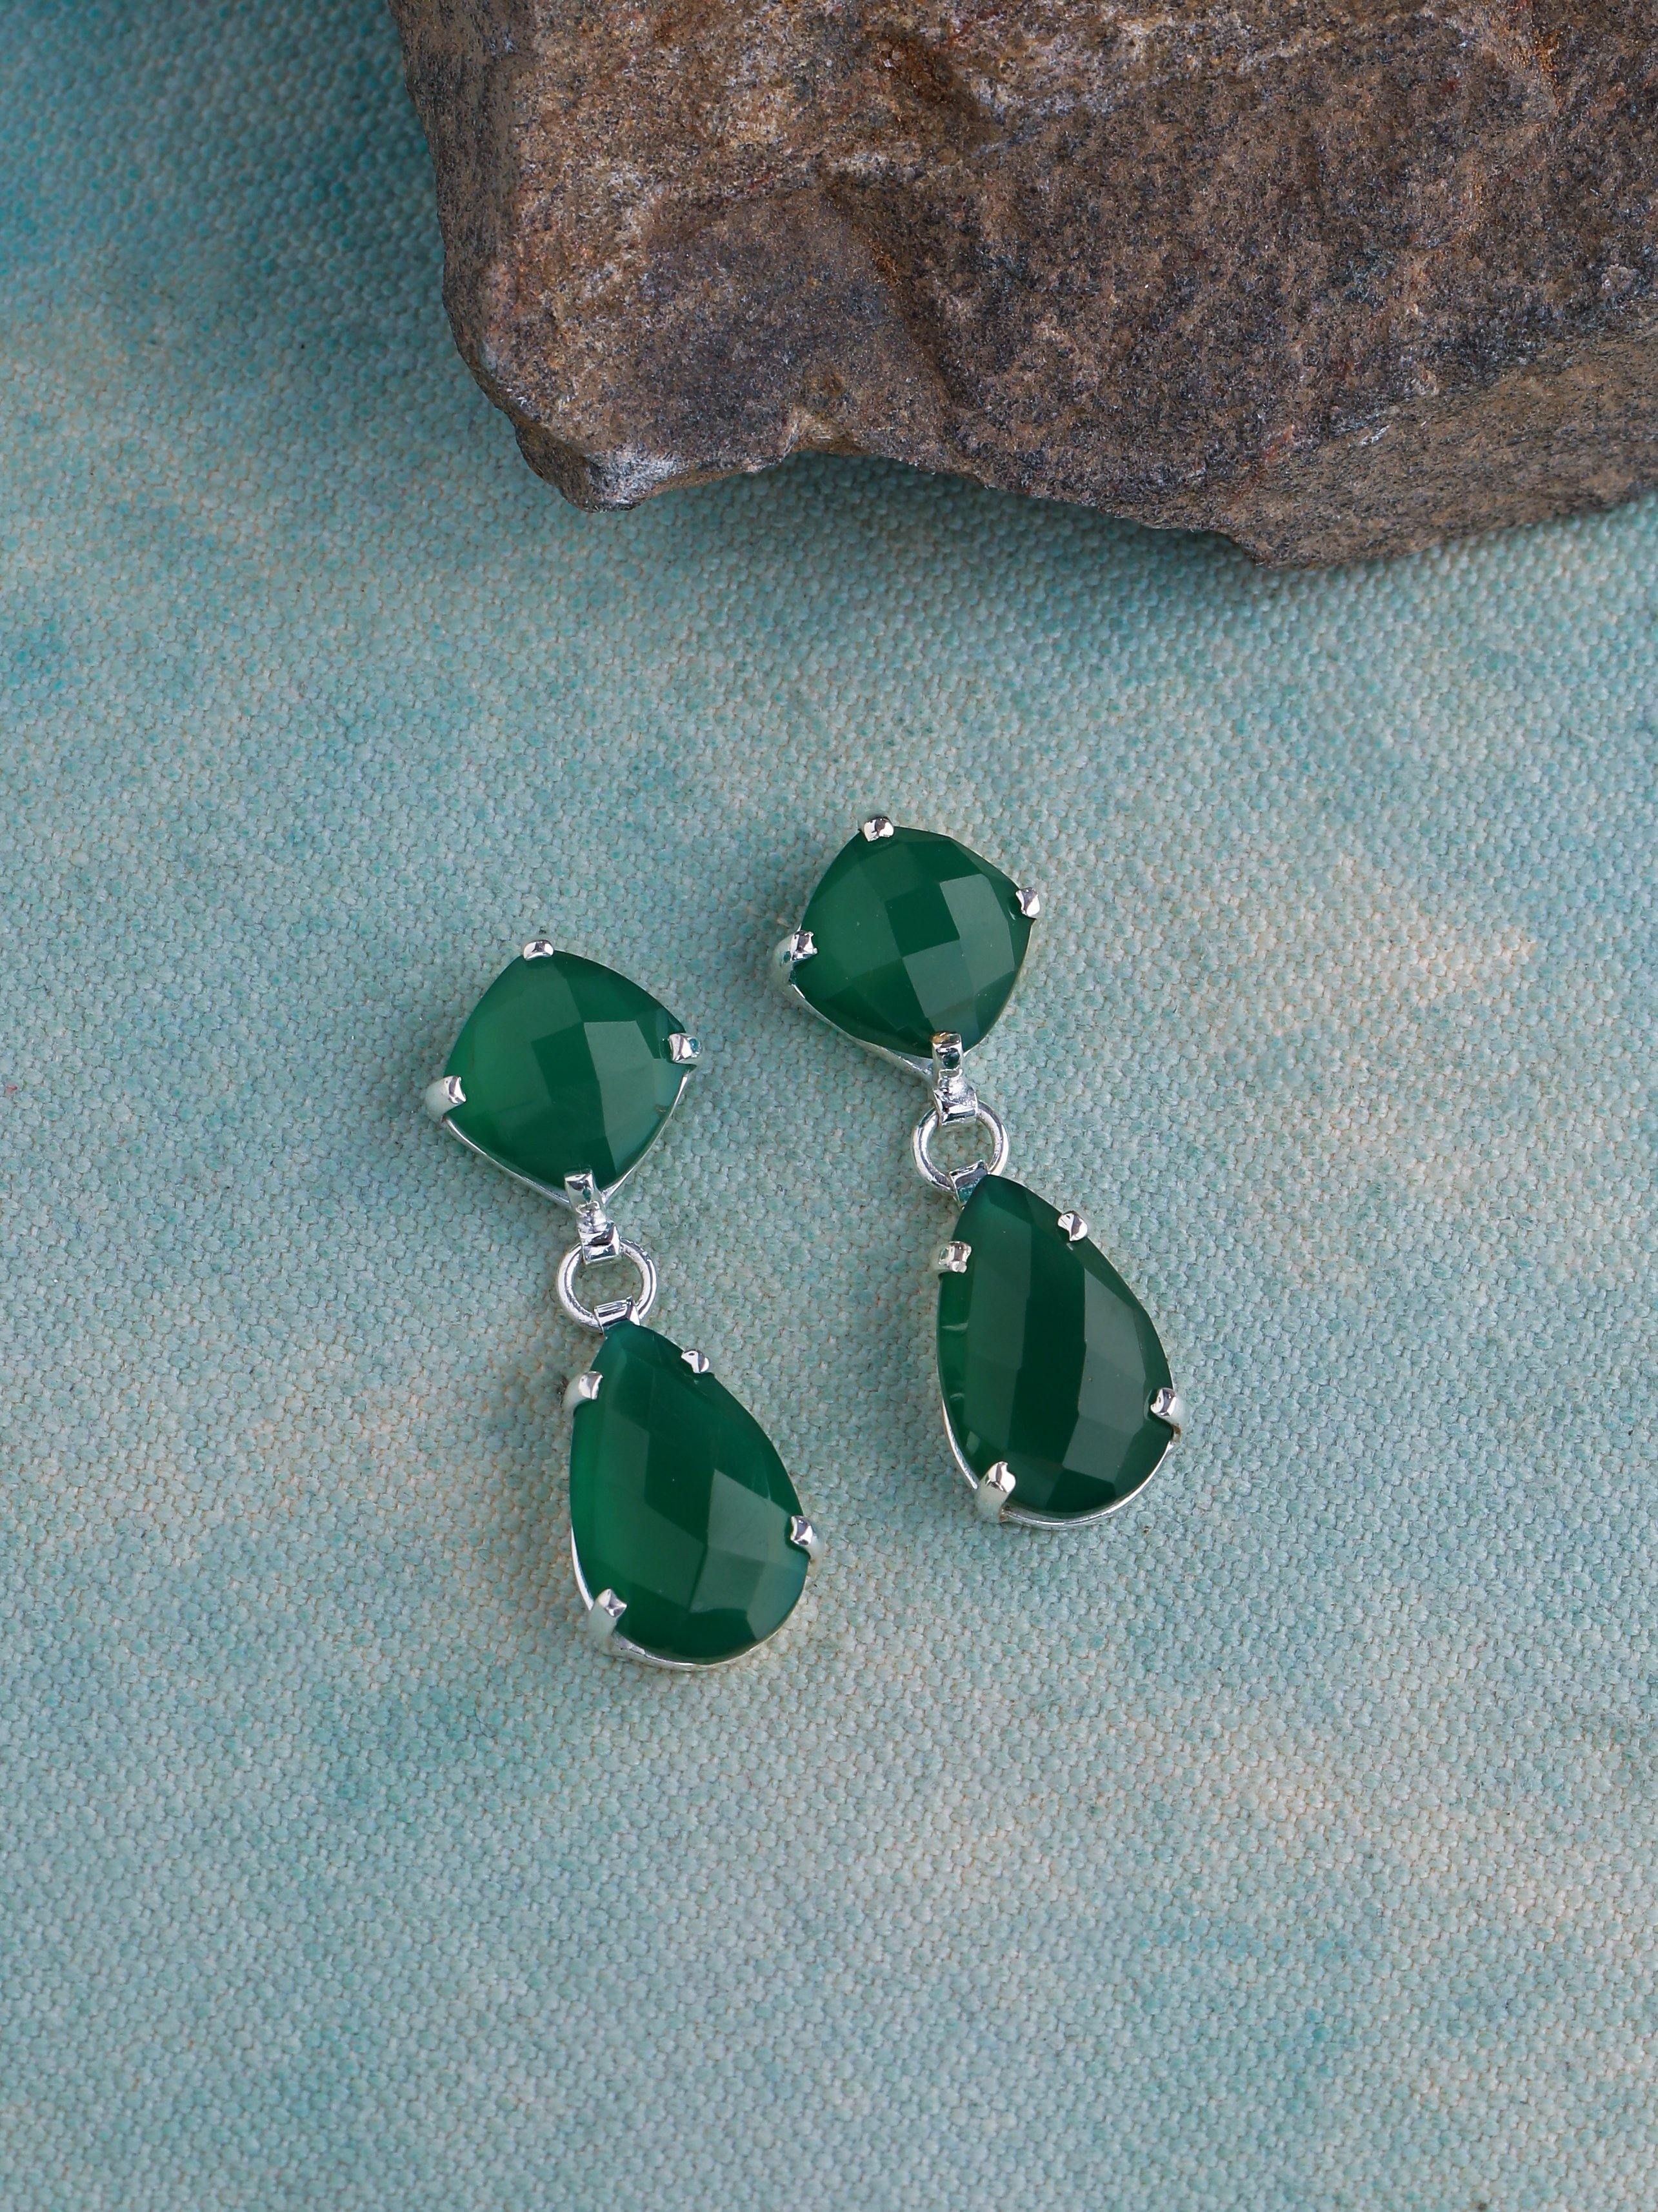 Green Onyx Drop Dangle Earrings Solid 925 Sterling Silver - YoTreasure